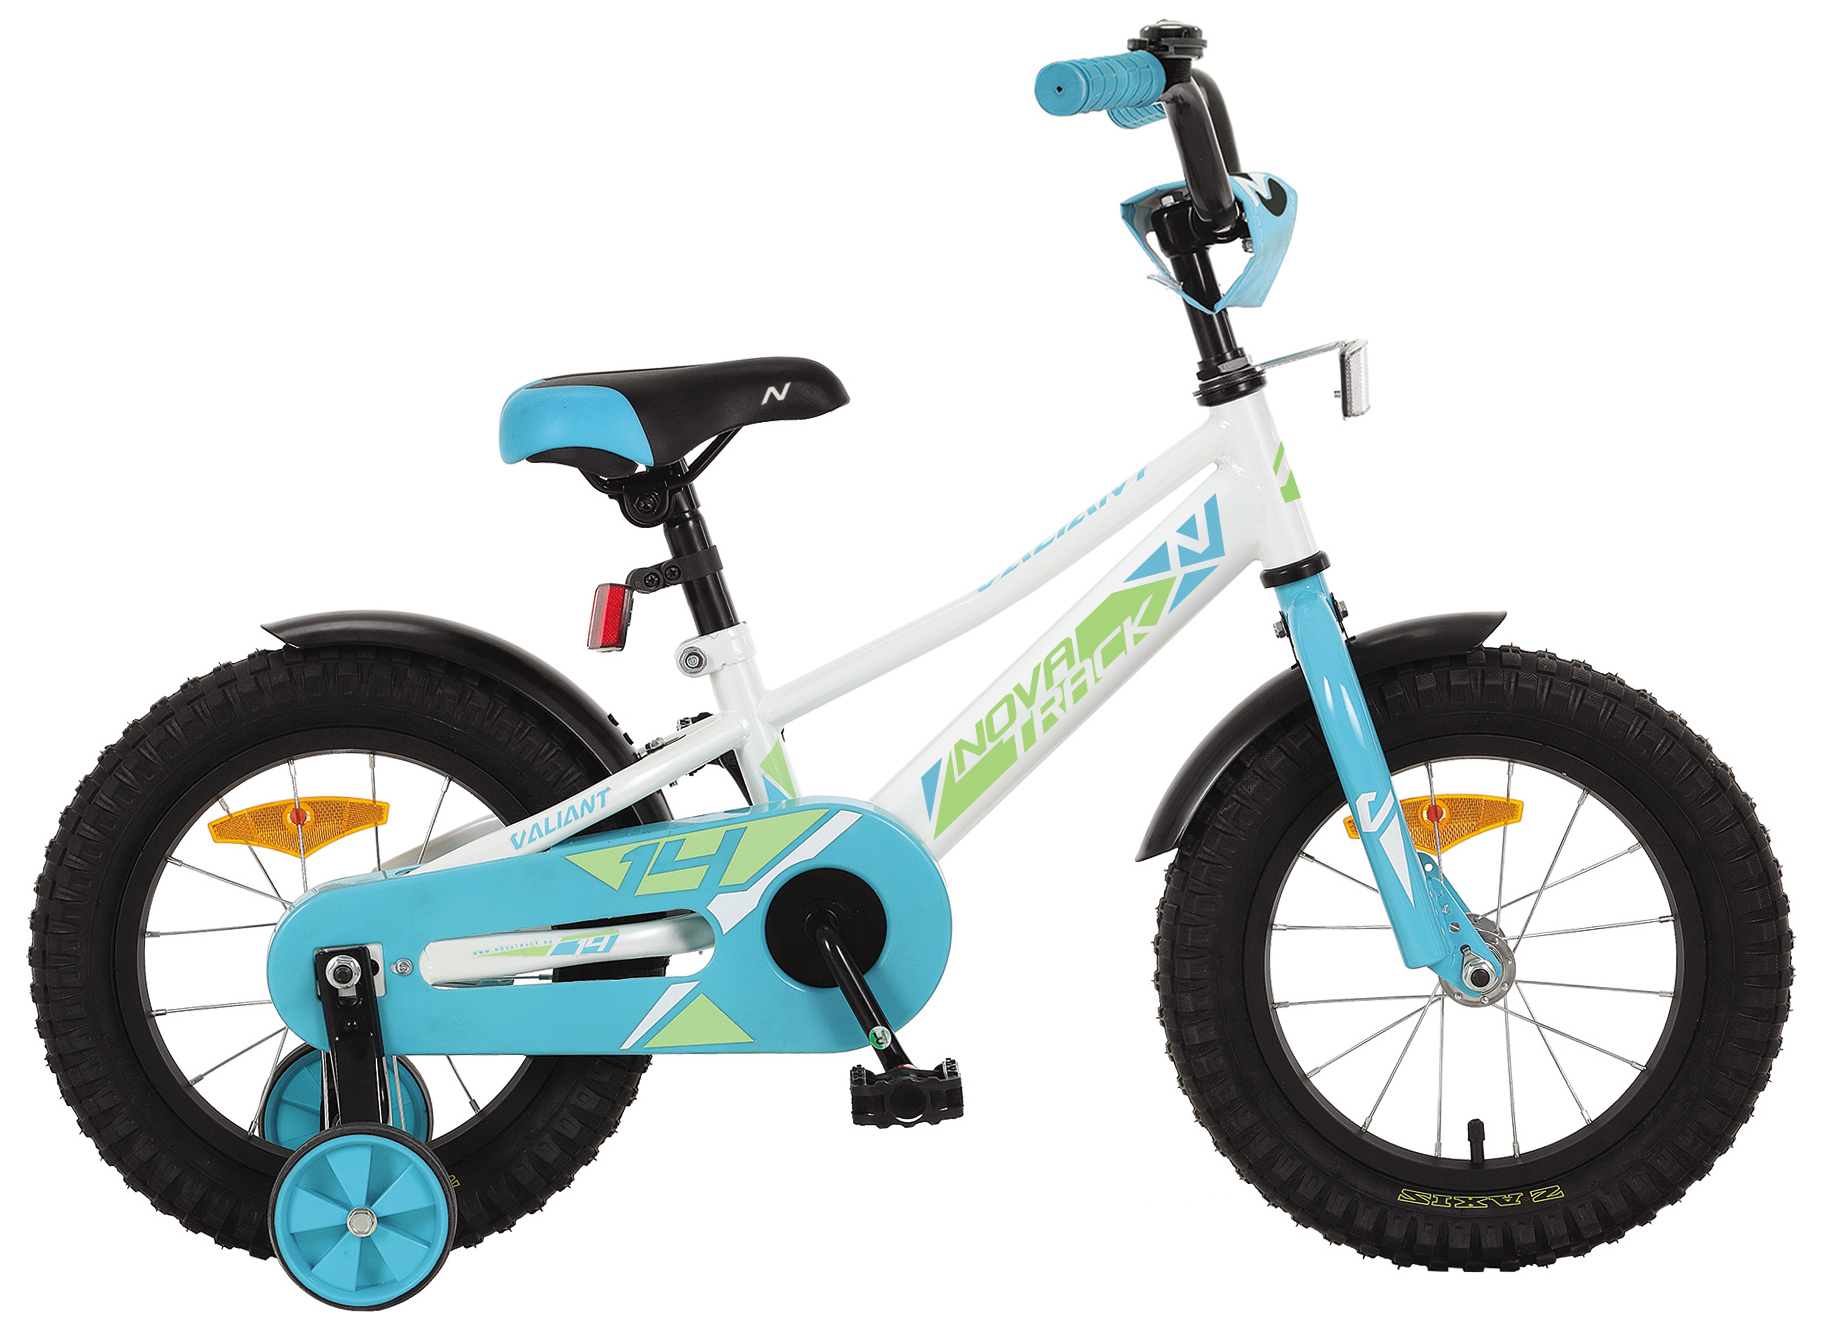  Отзывы о Детском велосипеде Novatrack Valiant 14 2022